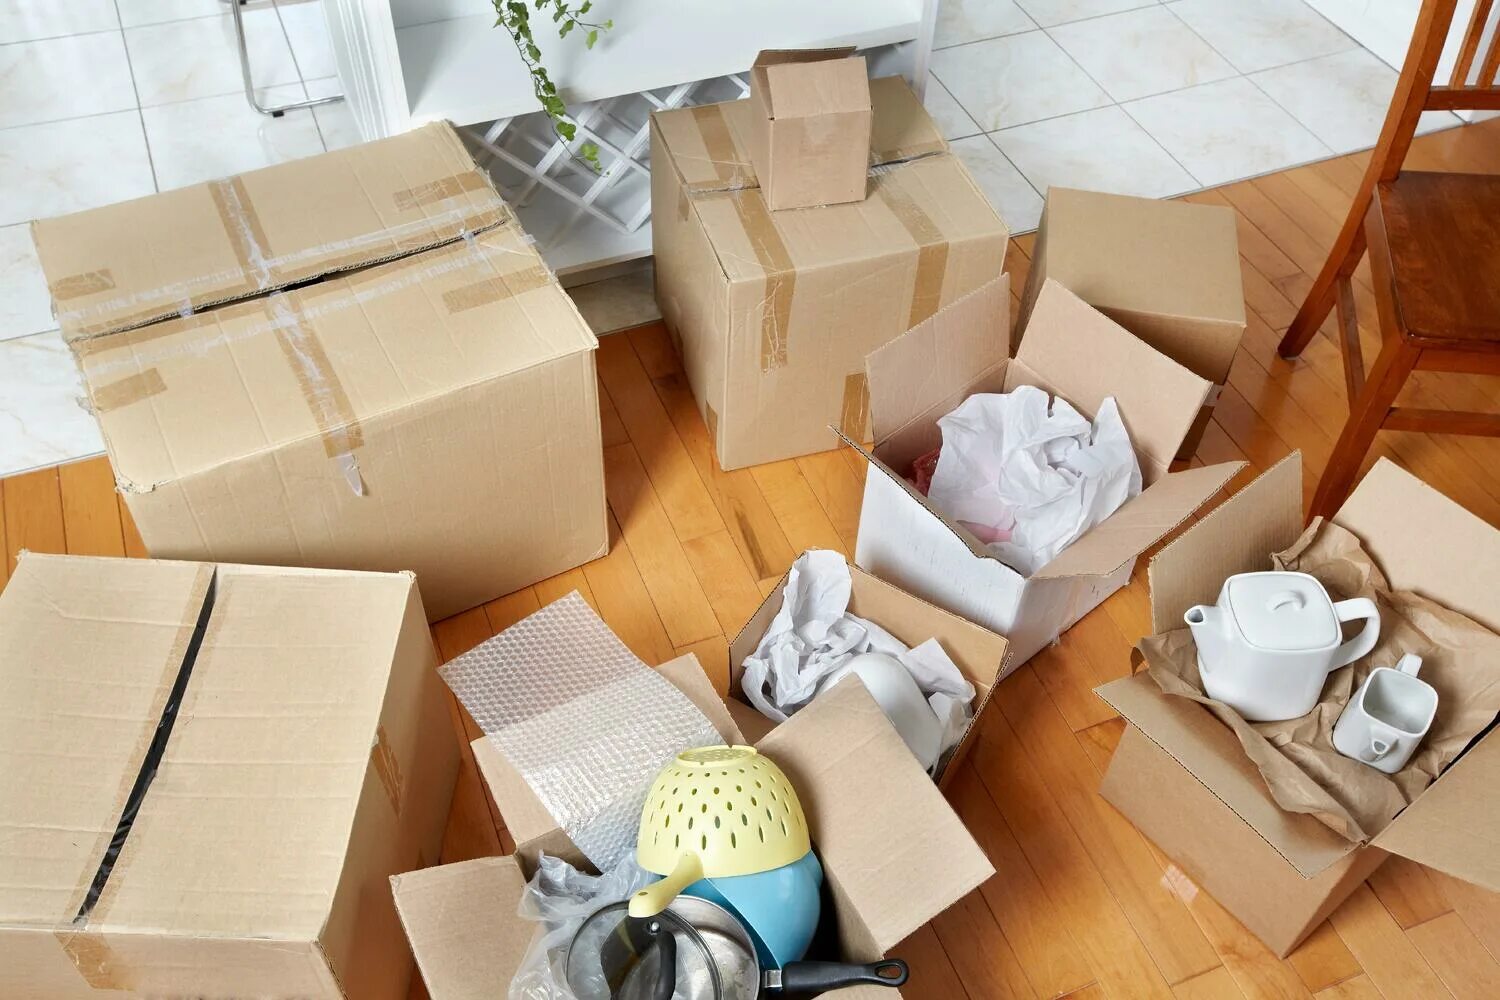 Move package. Коробки для упаковки вещей. Упаковка вещей для переезда. Коробки картонные с вещами. Упакованные вещи в коробки.